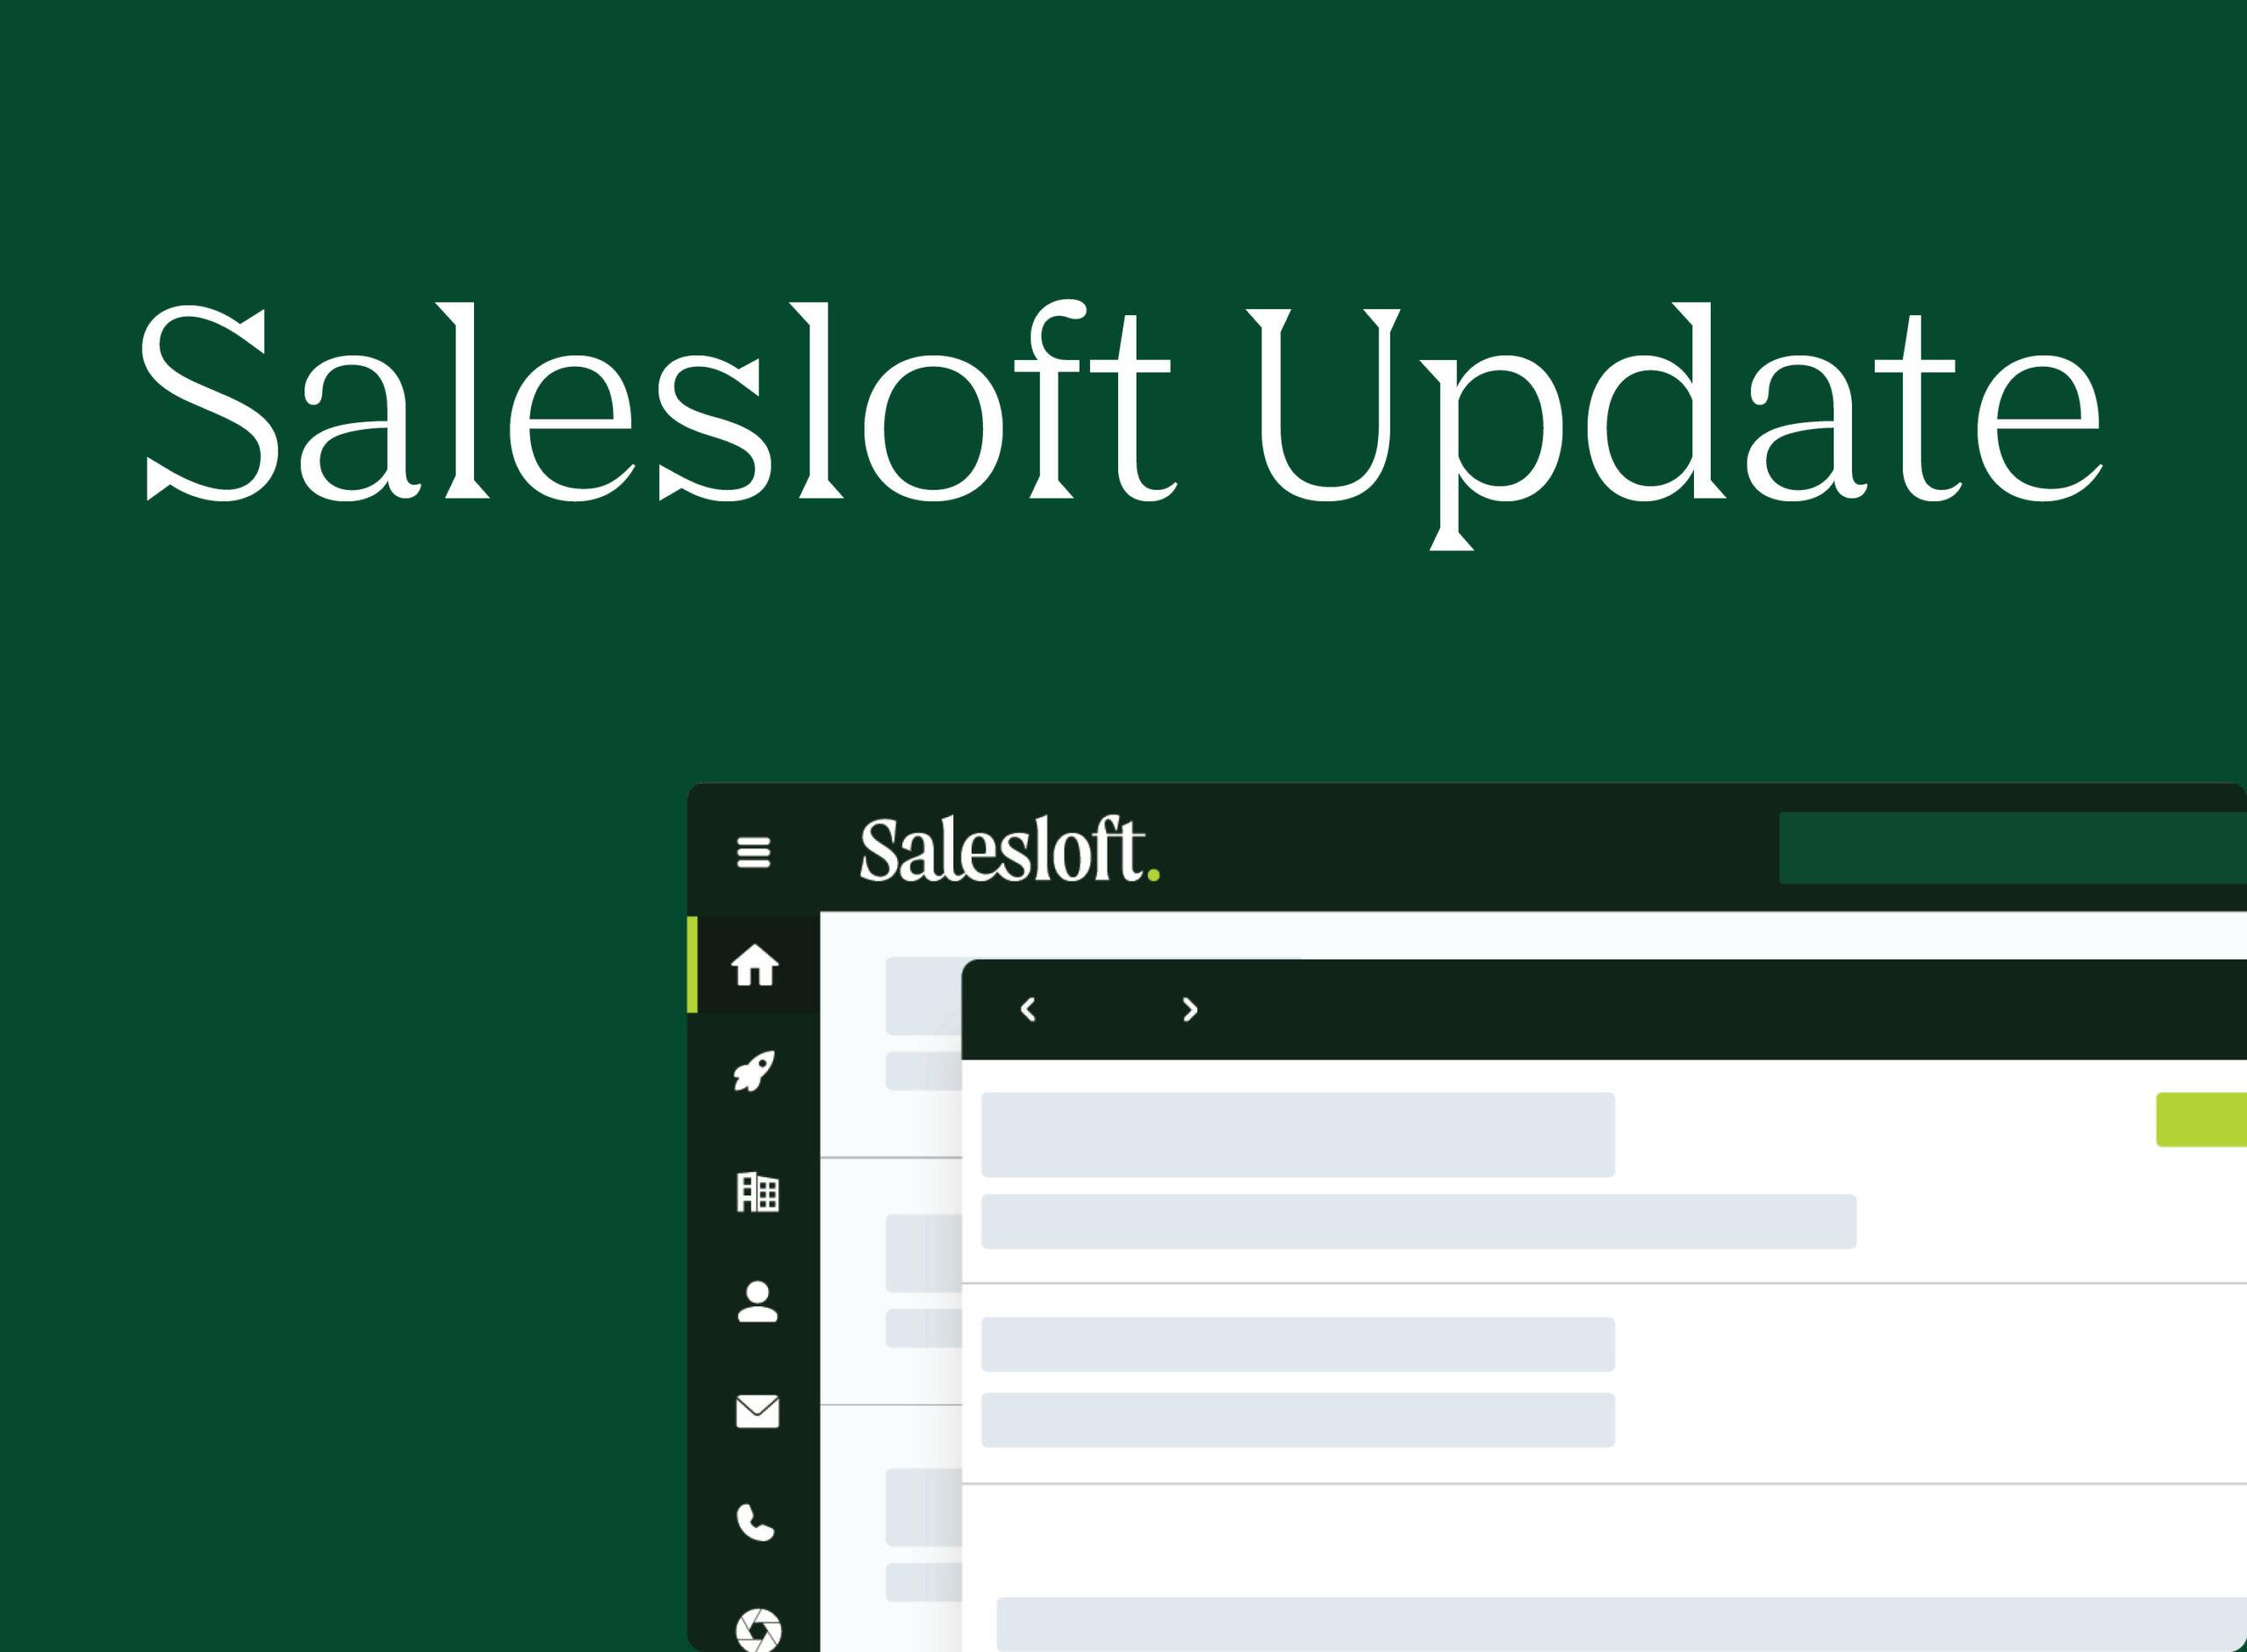 "Salesloft Update"